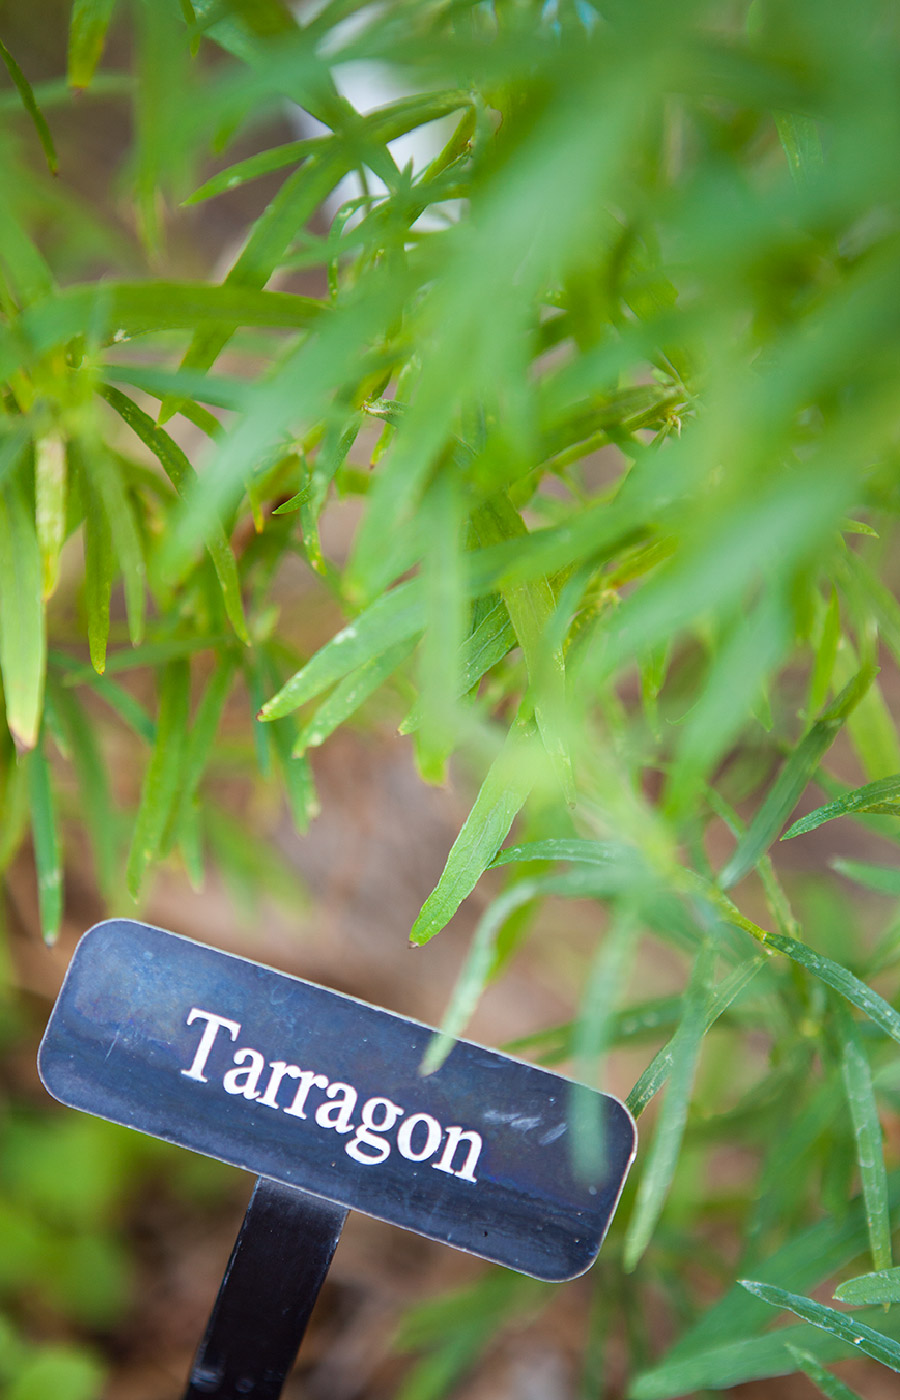 Tarragon plant close up